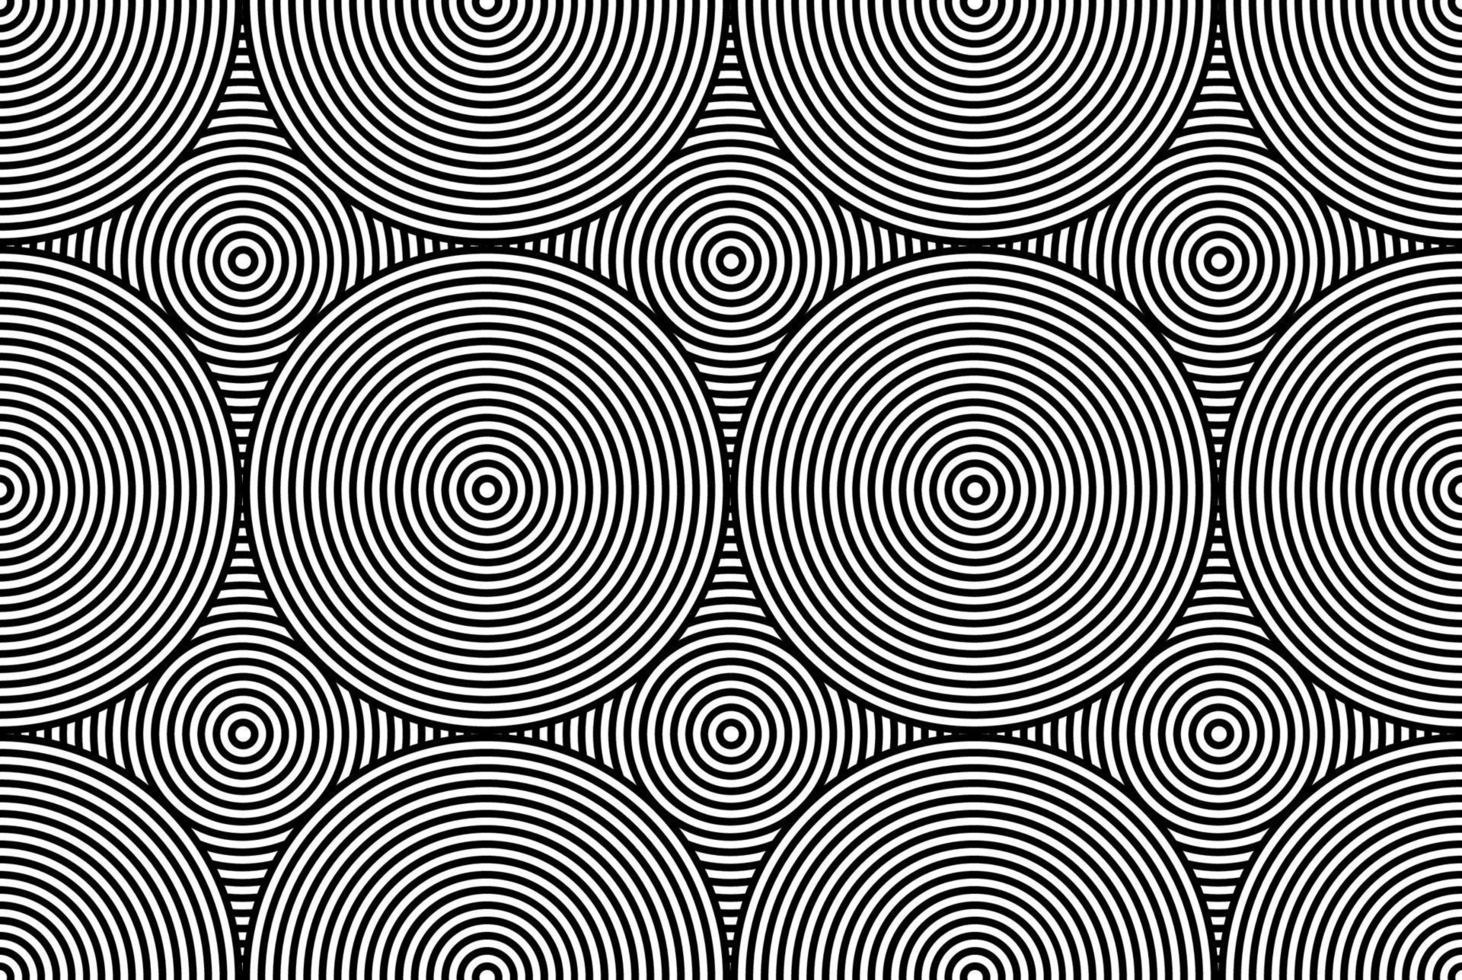 hypnotique fascinante abstraite image.vector illustration. vecteur